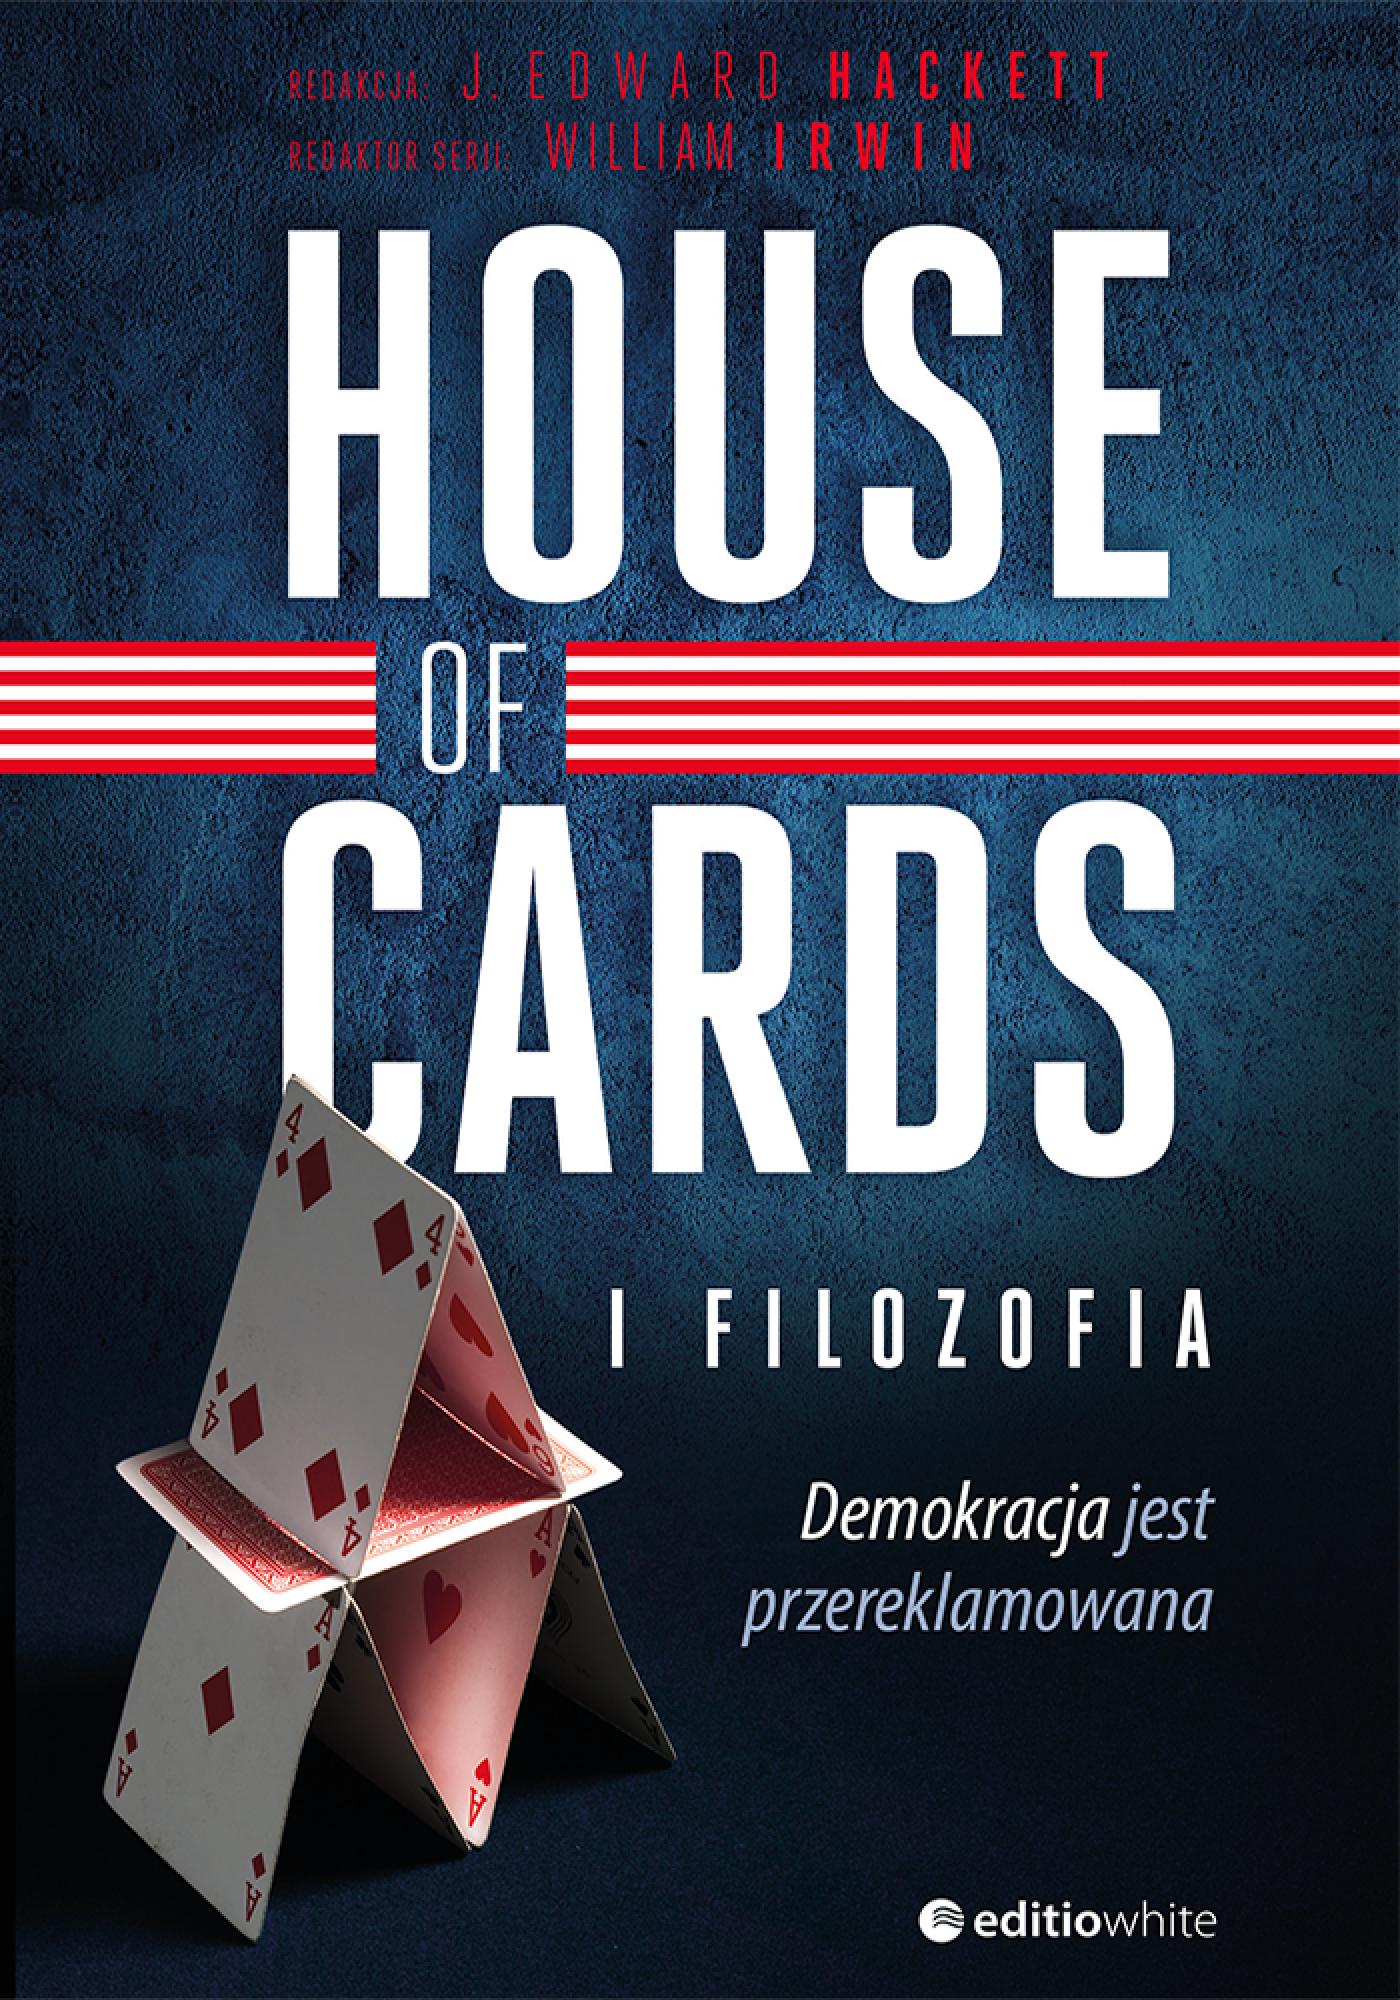 Okładka:House of Cards i filozofia. Demokracja jest przereklamowana 